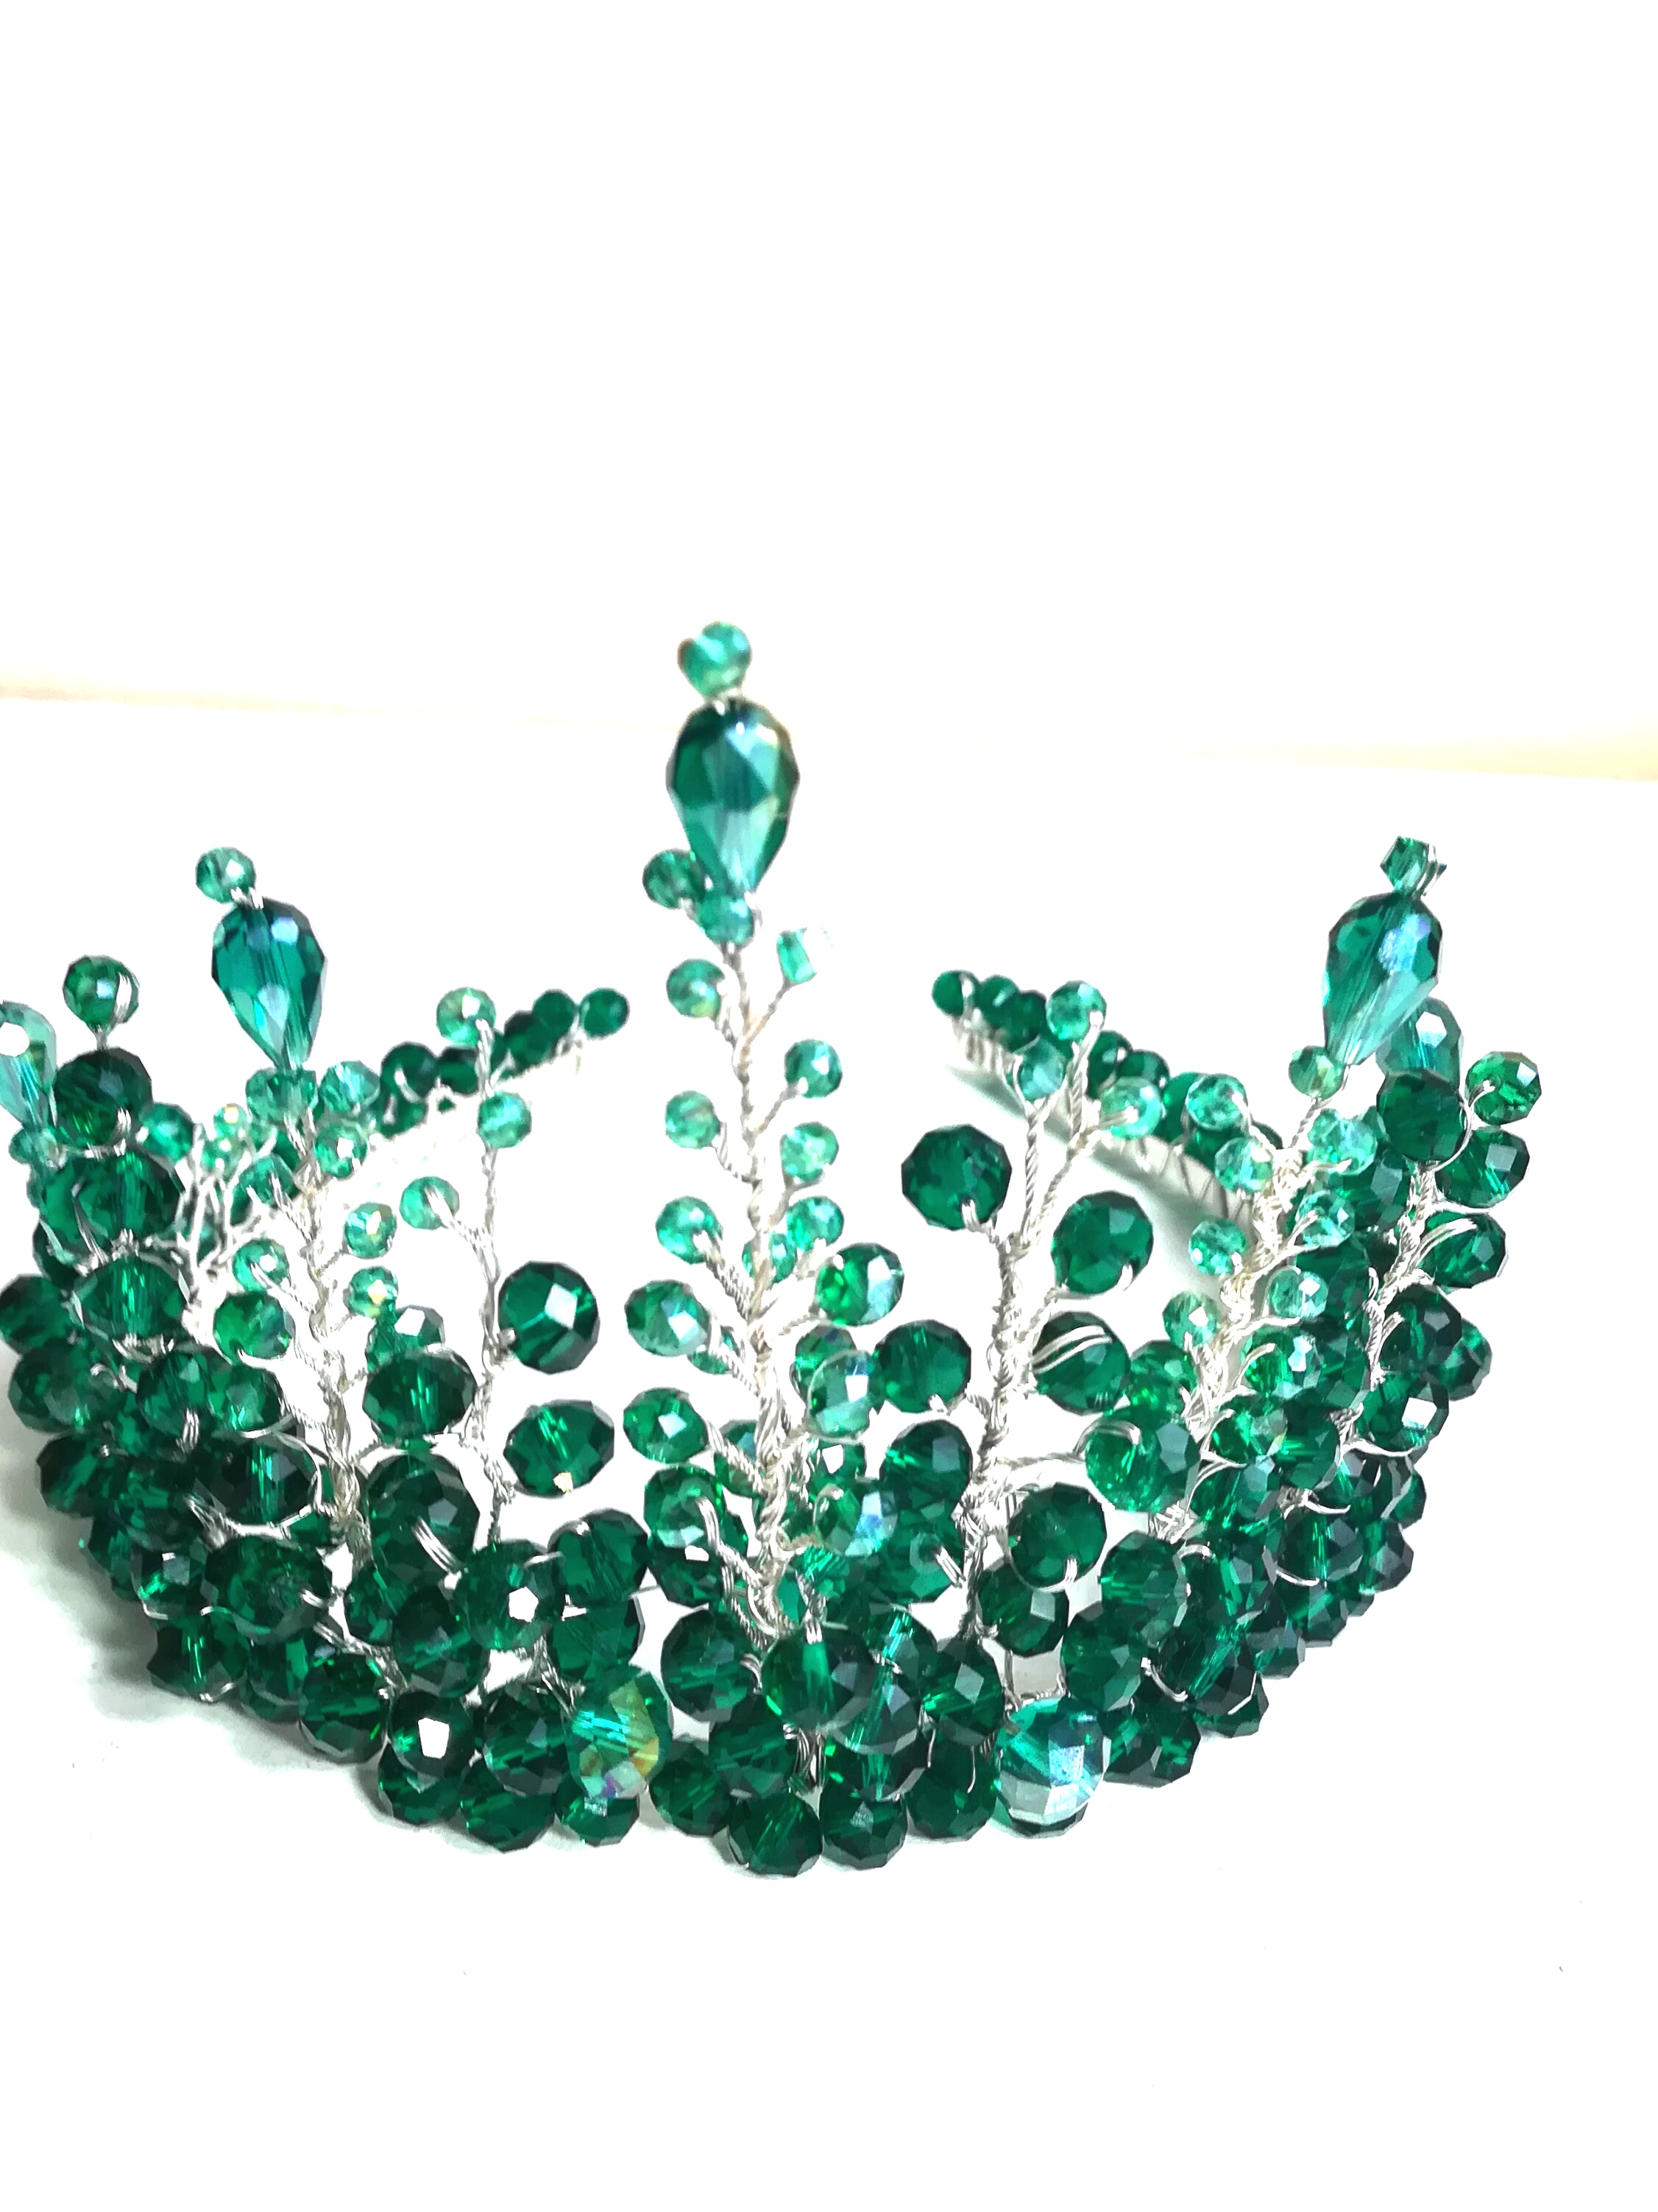 Ohromující smaragdově zelená svatební koruna s krystaly - bohyně Artemis